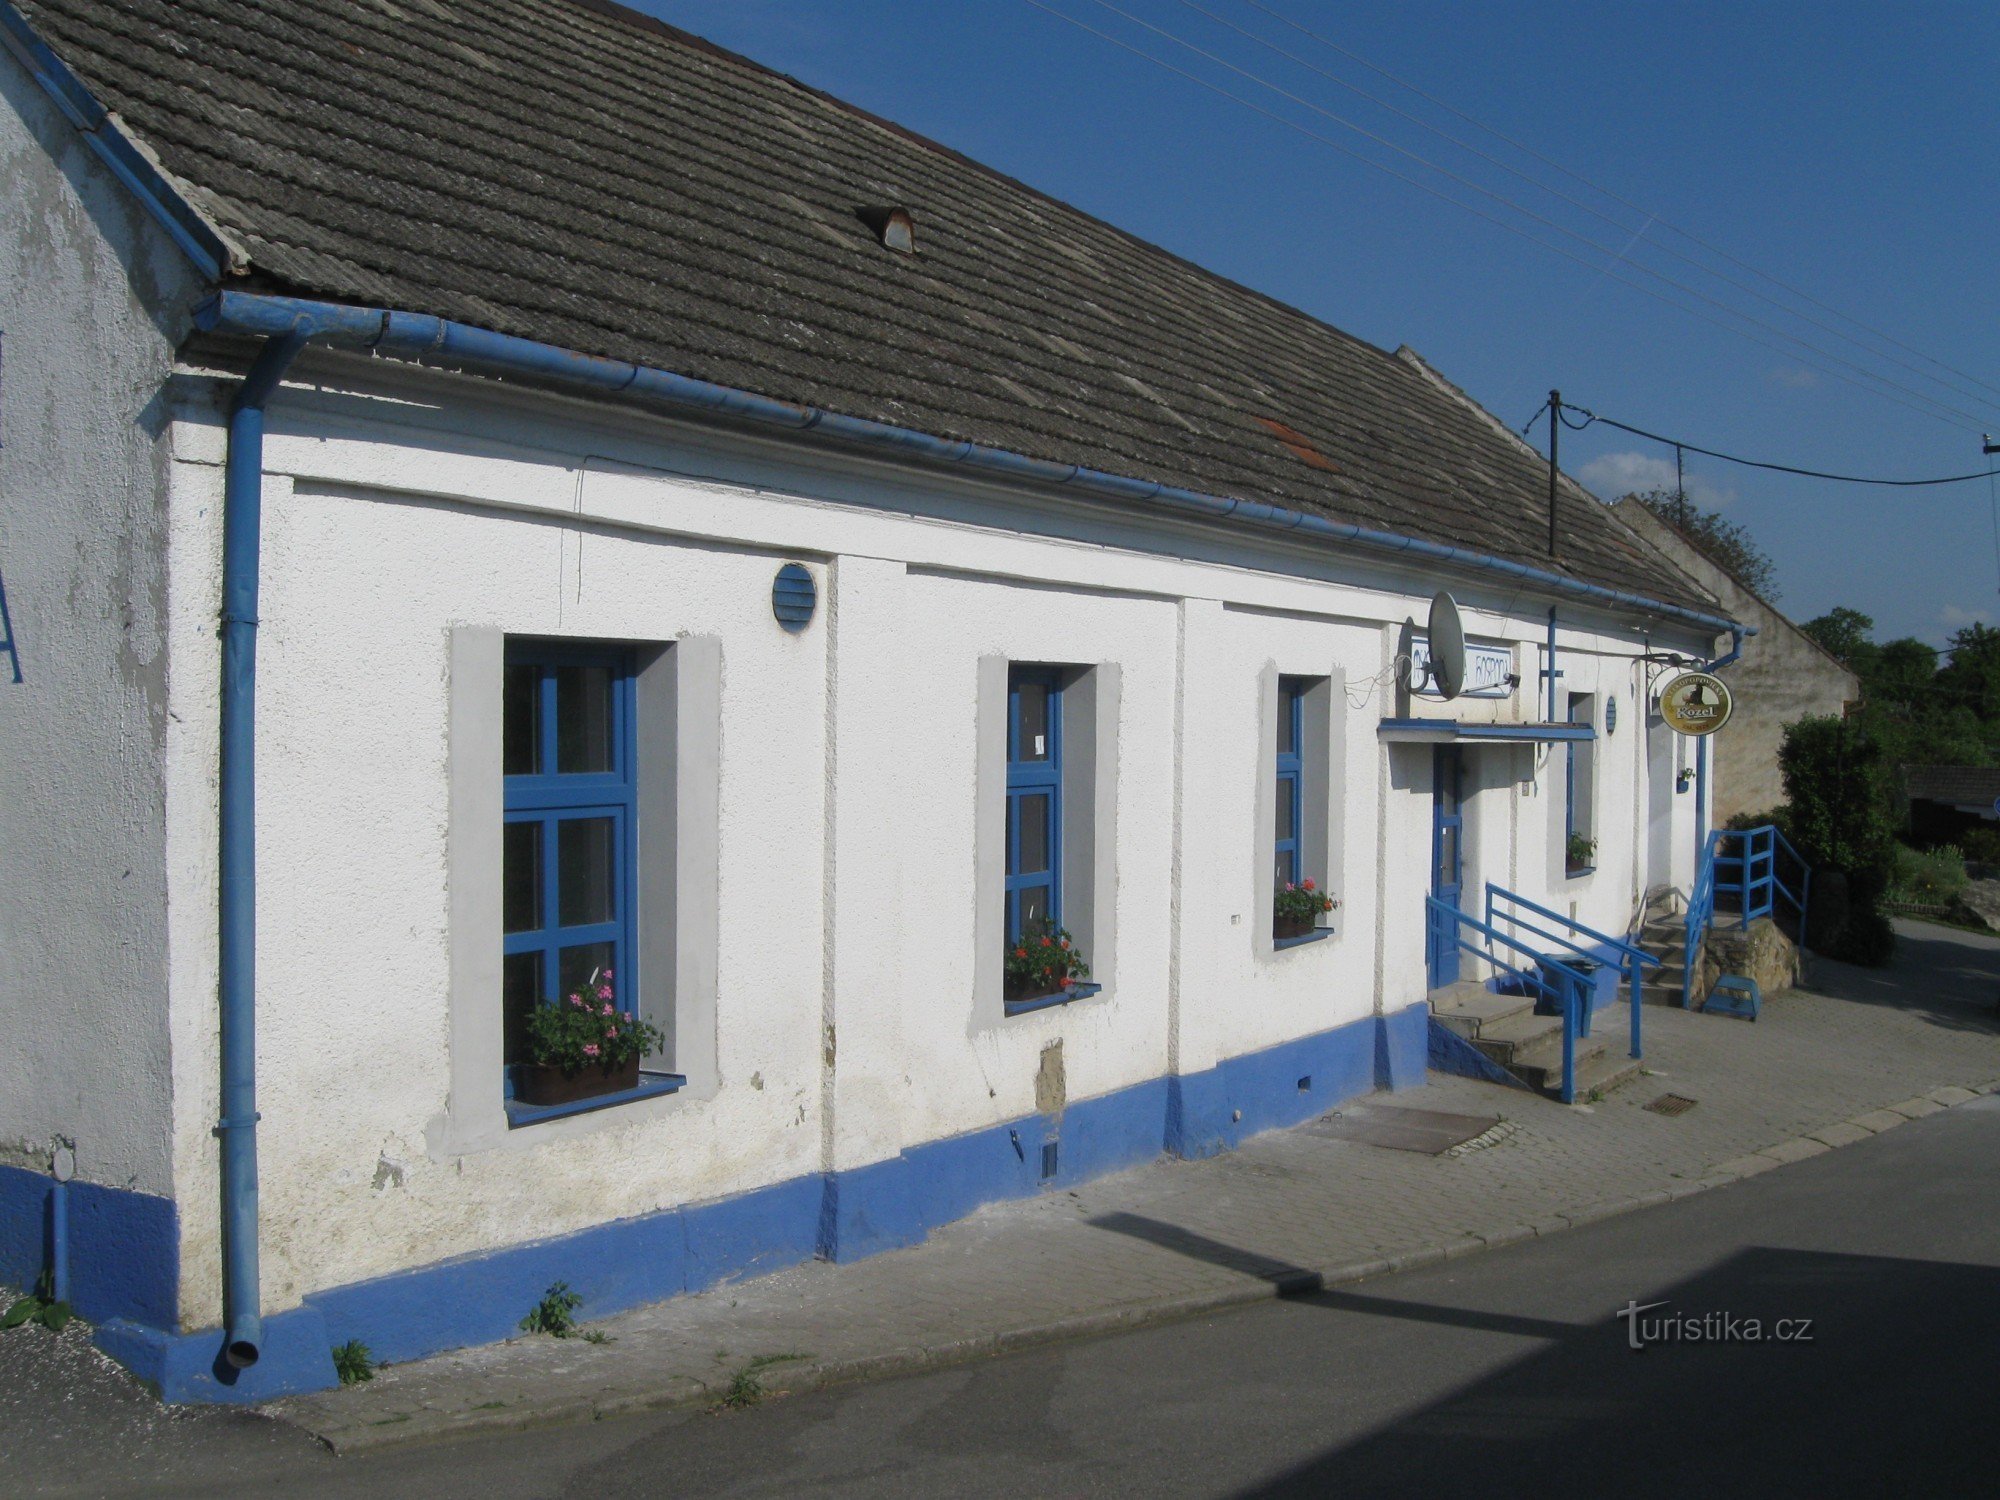 An inn in the village of Modrá